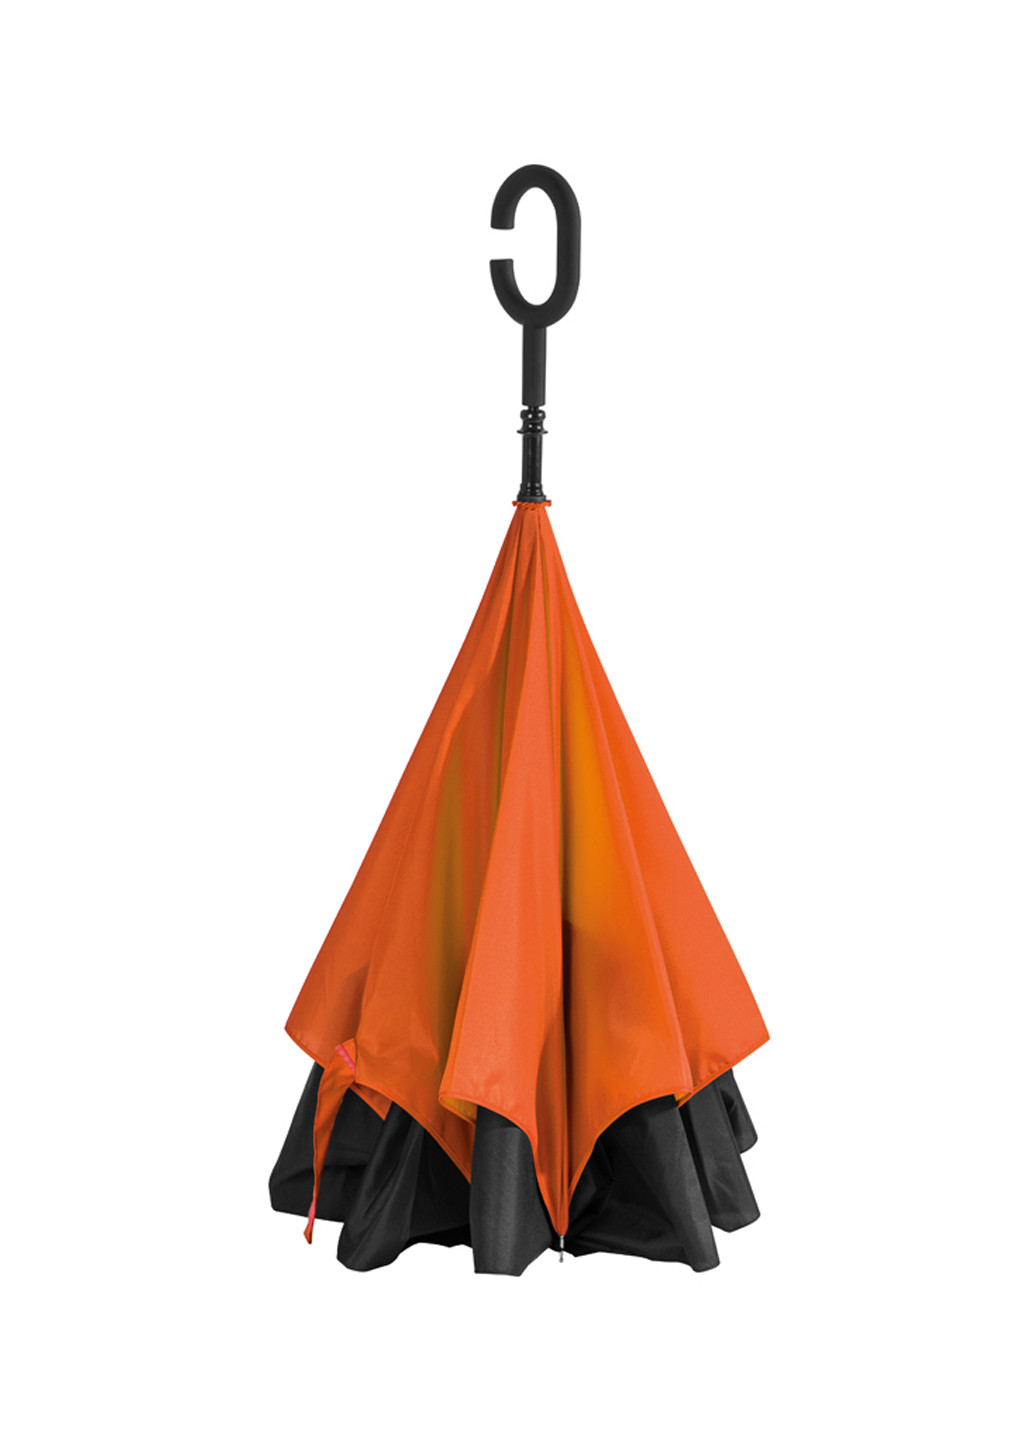 Зонт-трость, 83 см Macma (131115105)